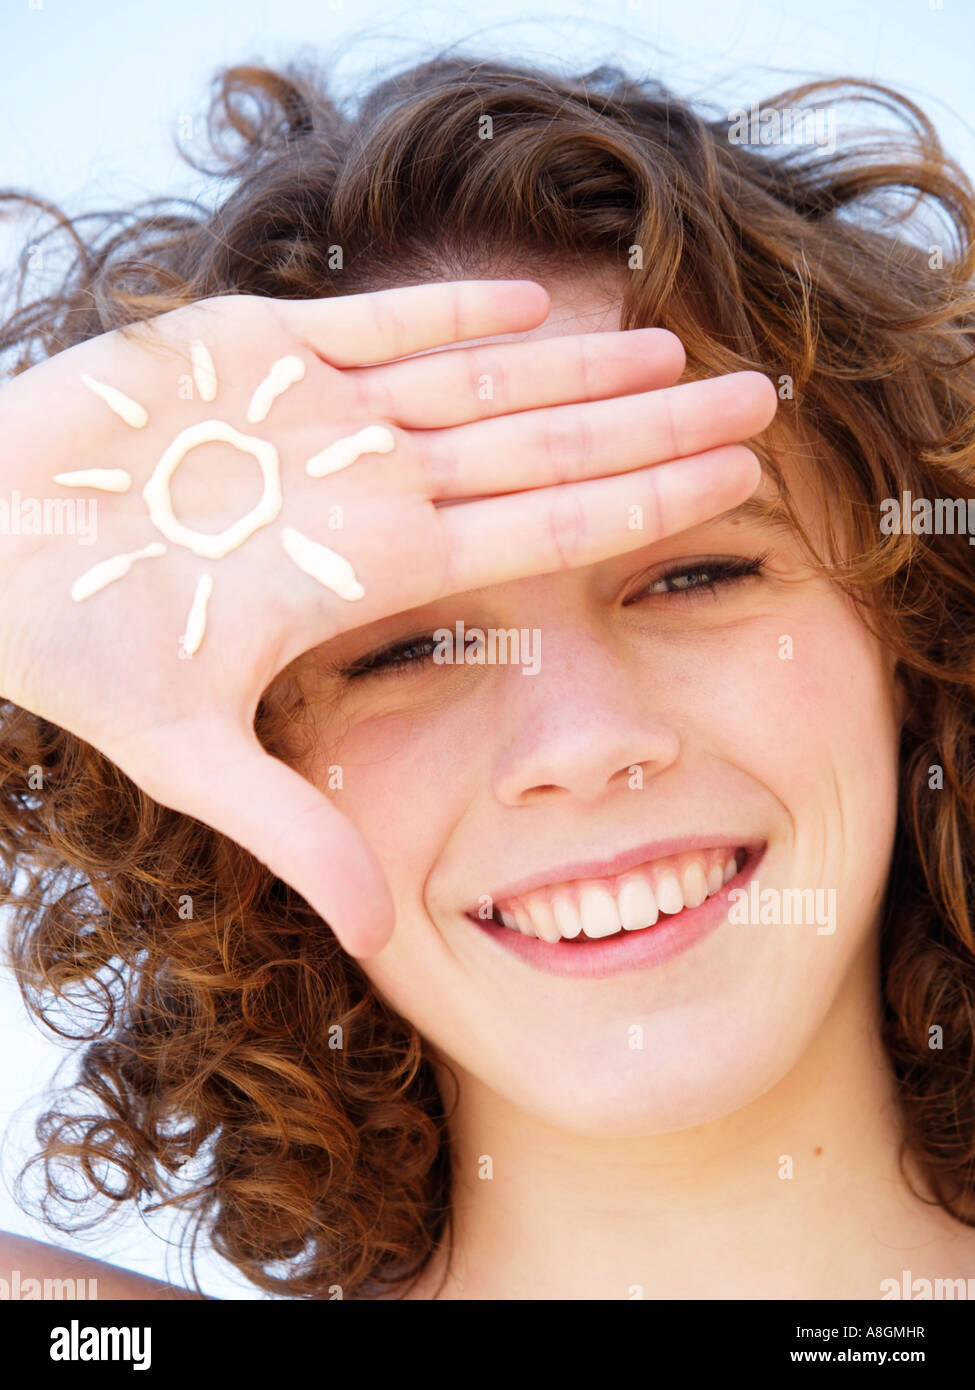 Adolescente sonriente con la figura de un sol dibujado en la crema solar en su mano piel clara deben estar protegidos contra los rayos UV Foto de stock